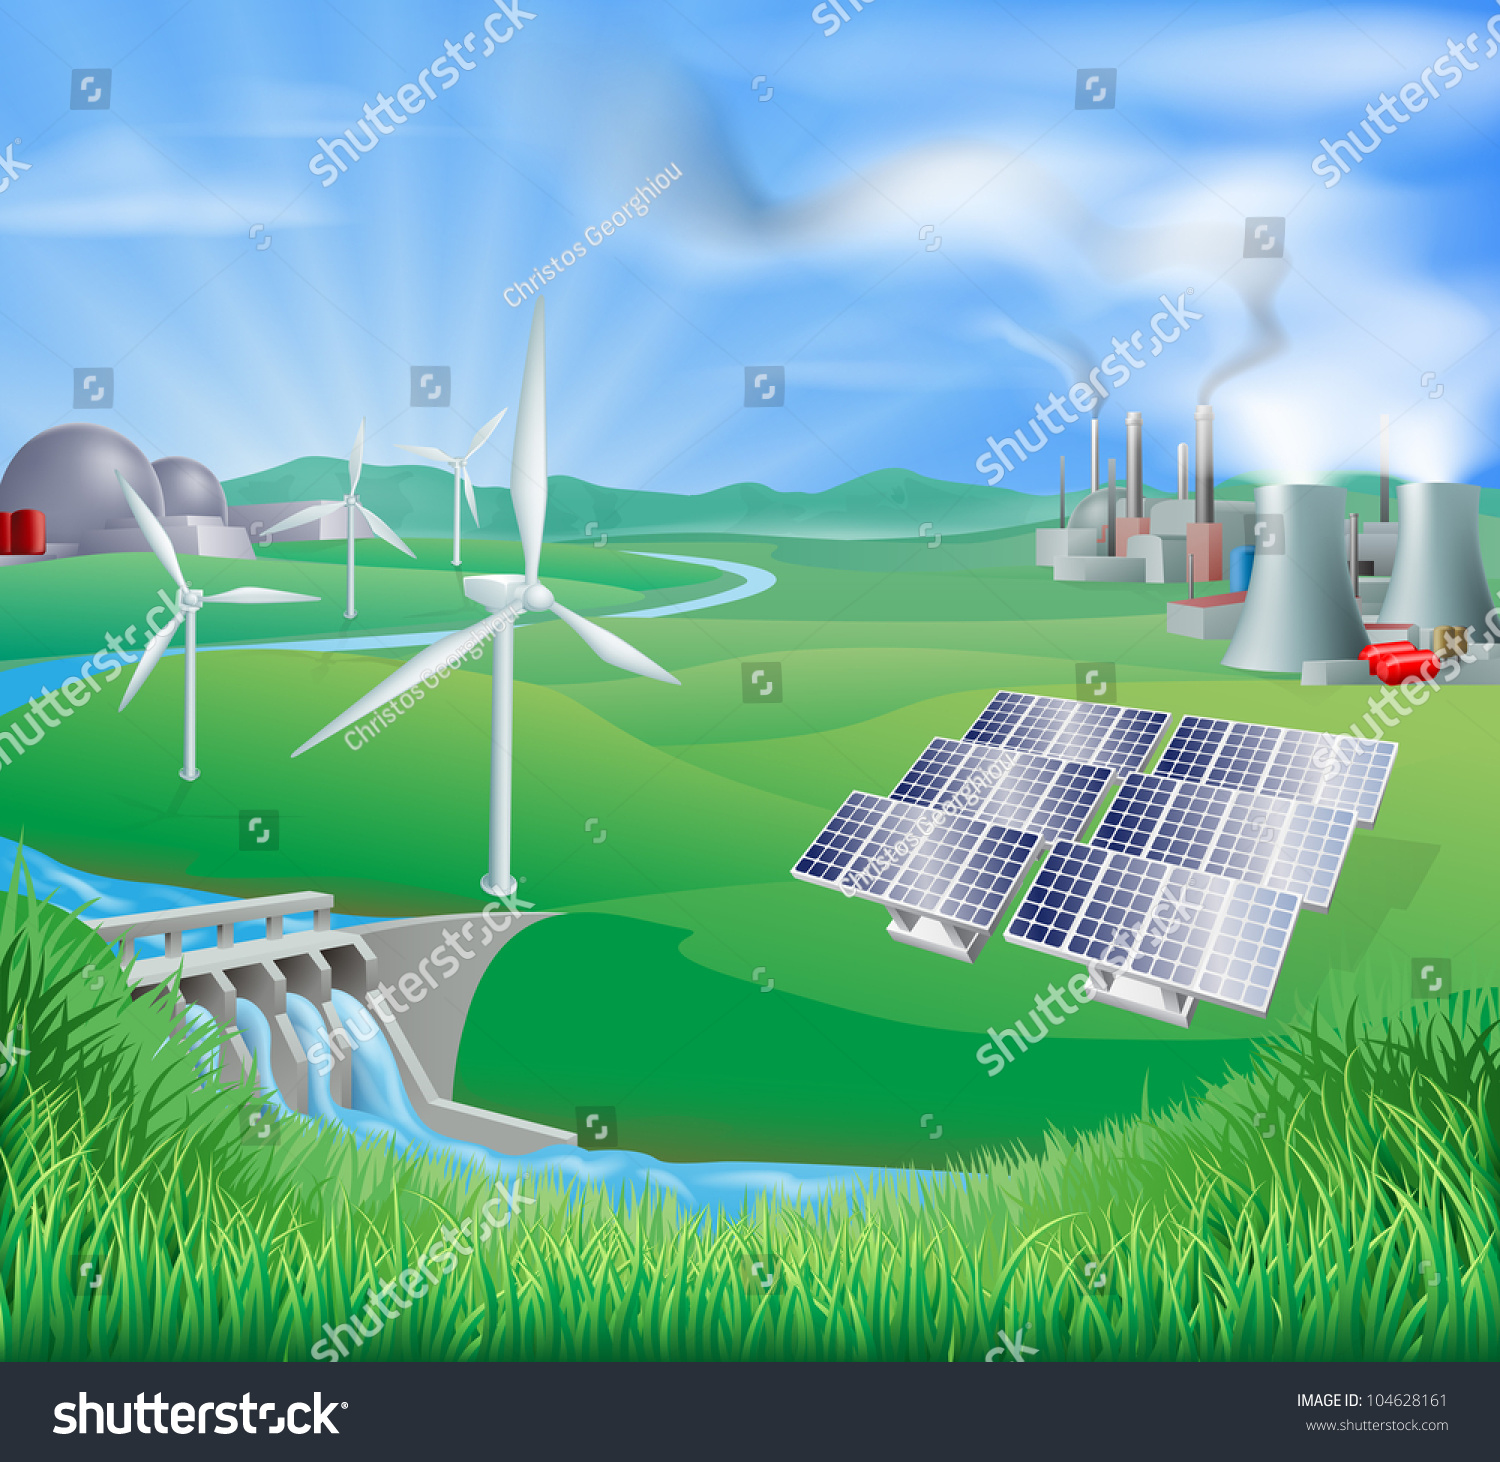 Essay on renewable energy resources